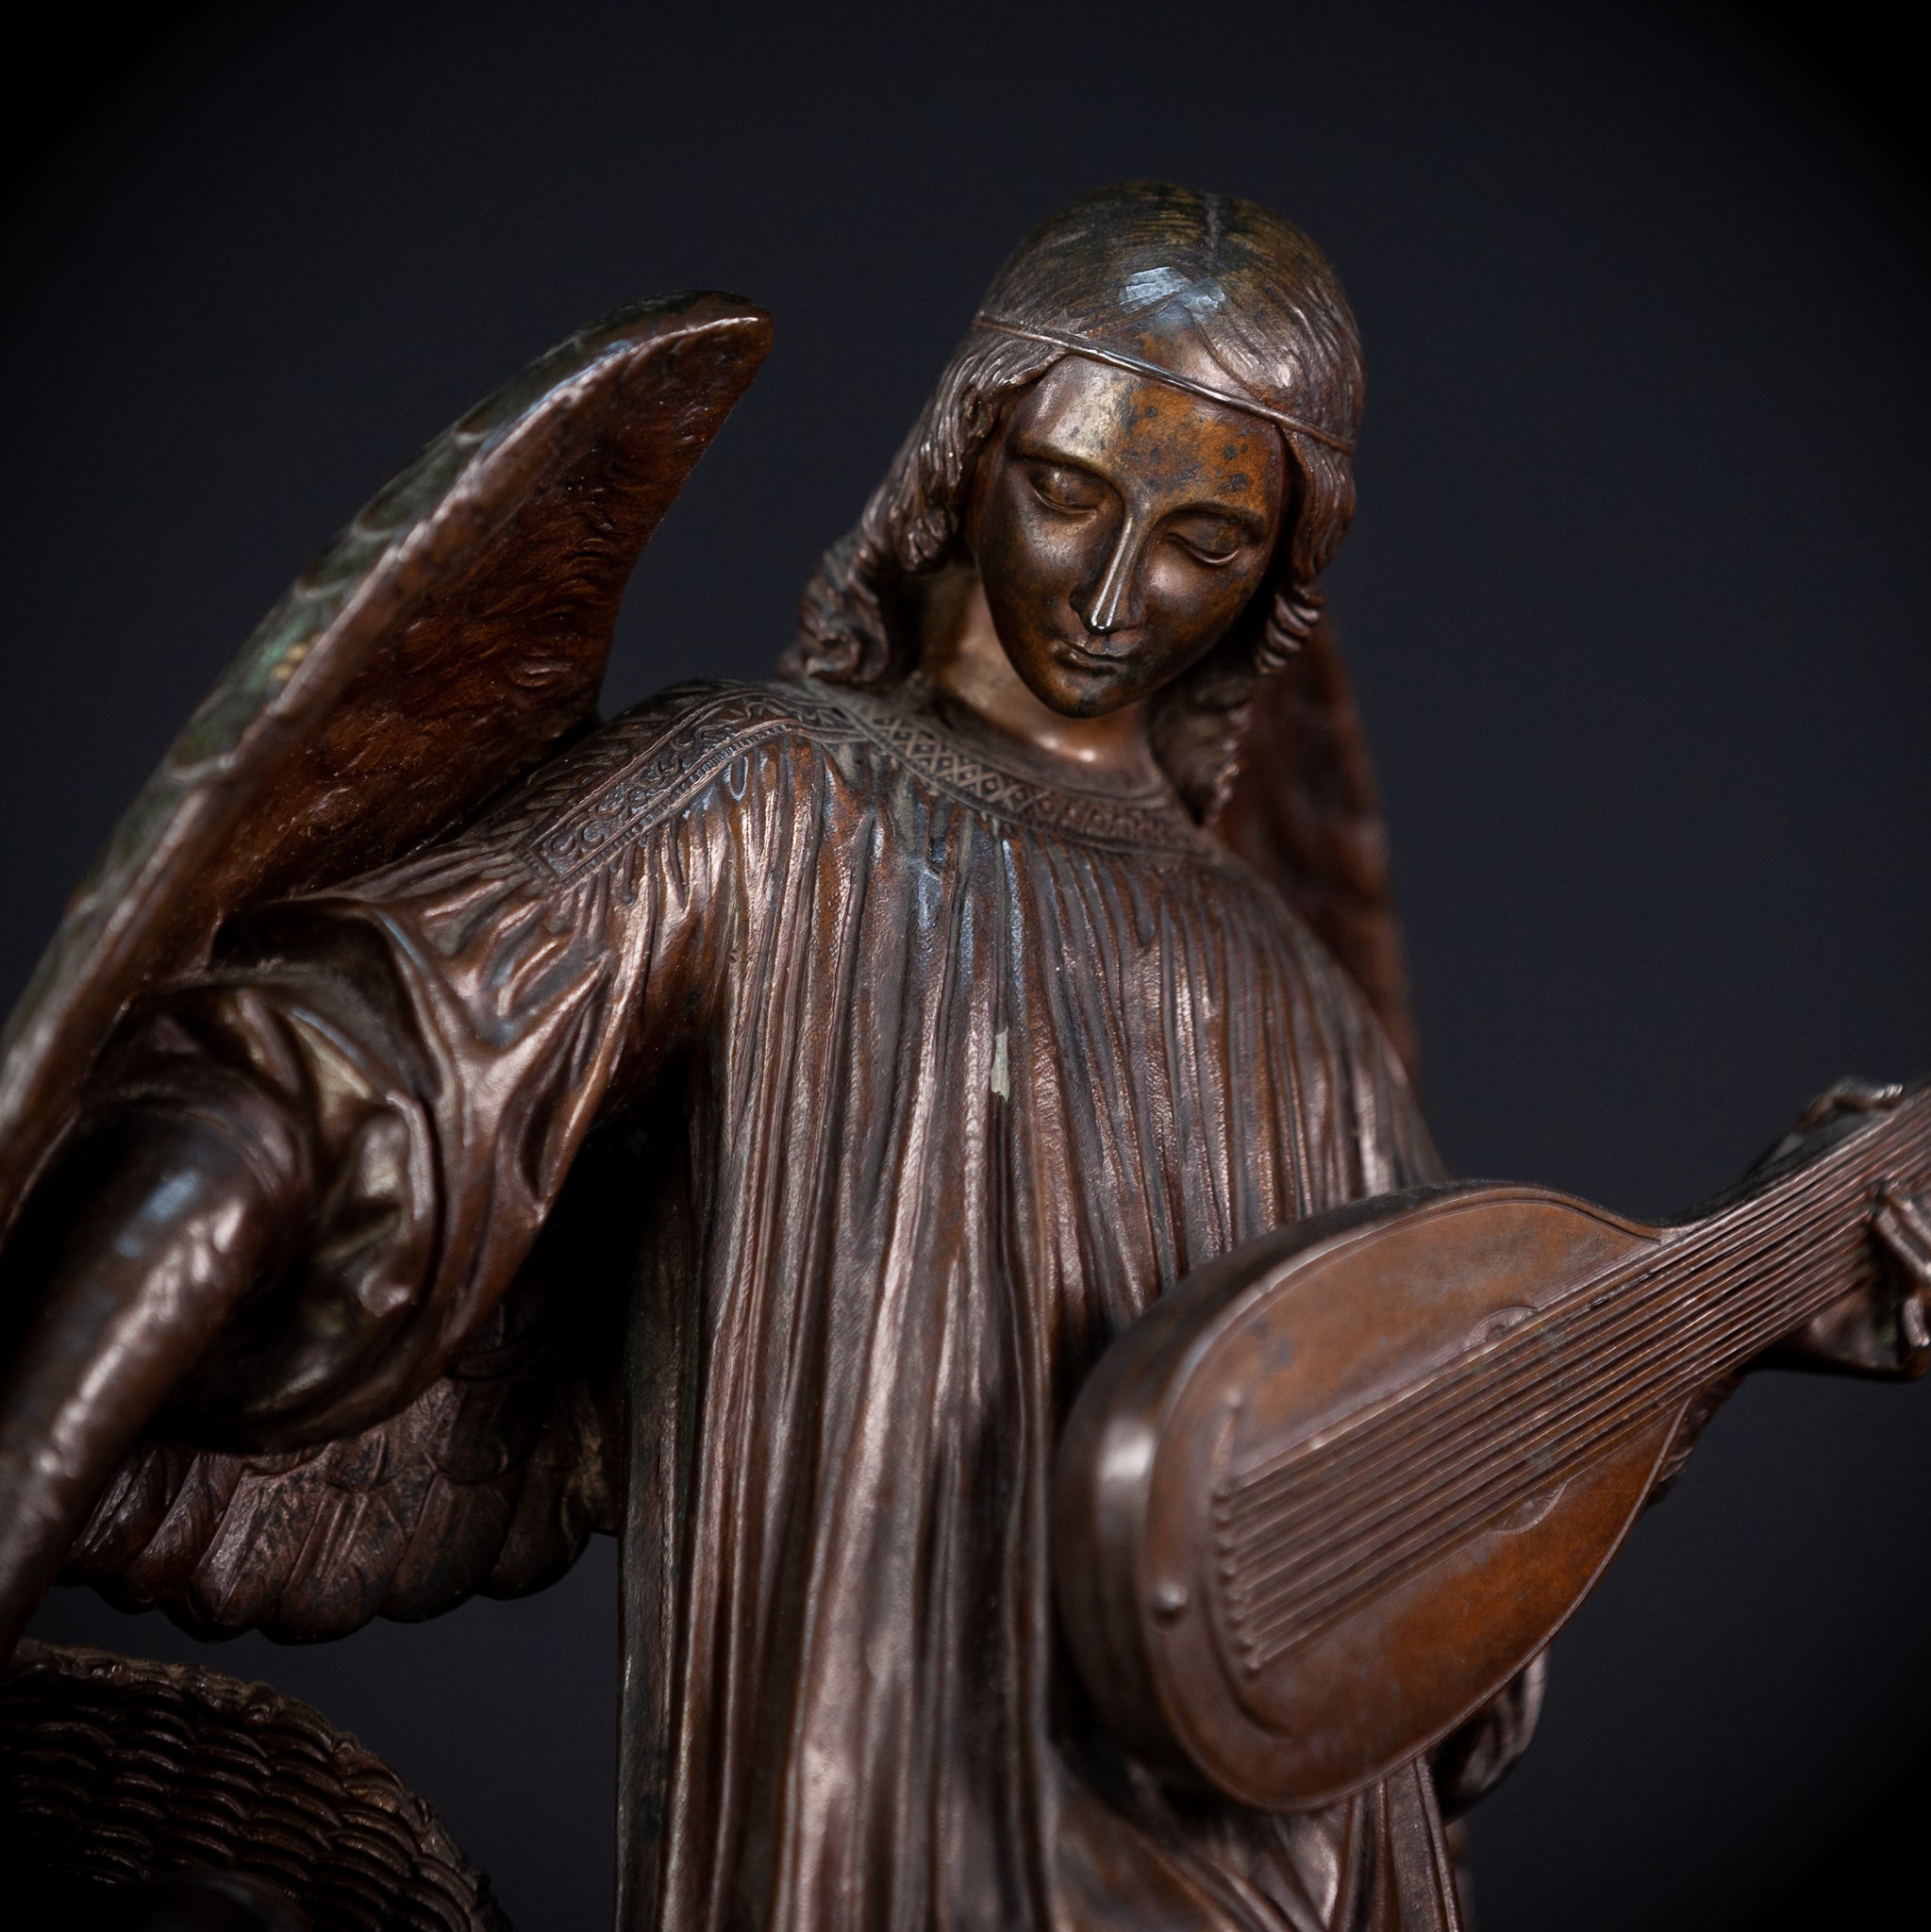 Archangel Guardian Bronze Sculpture | 1800s Antique | 15.4" / 39 cm